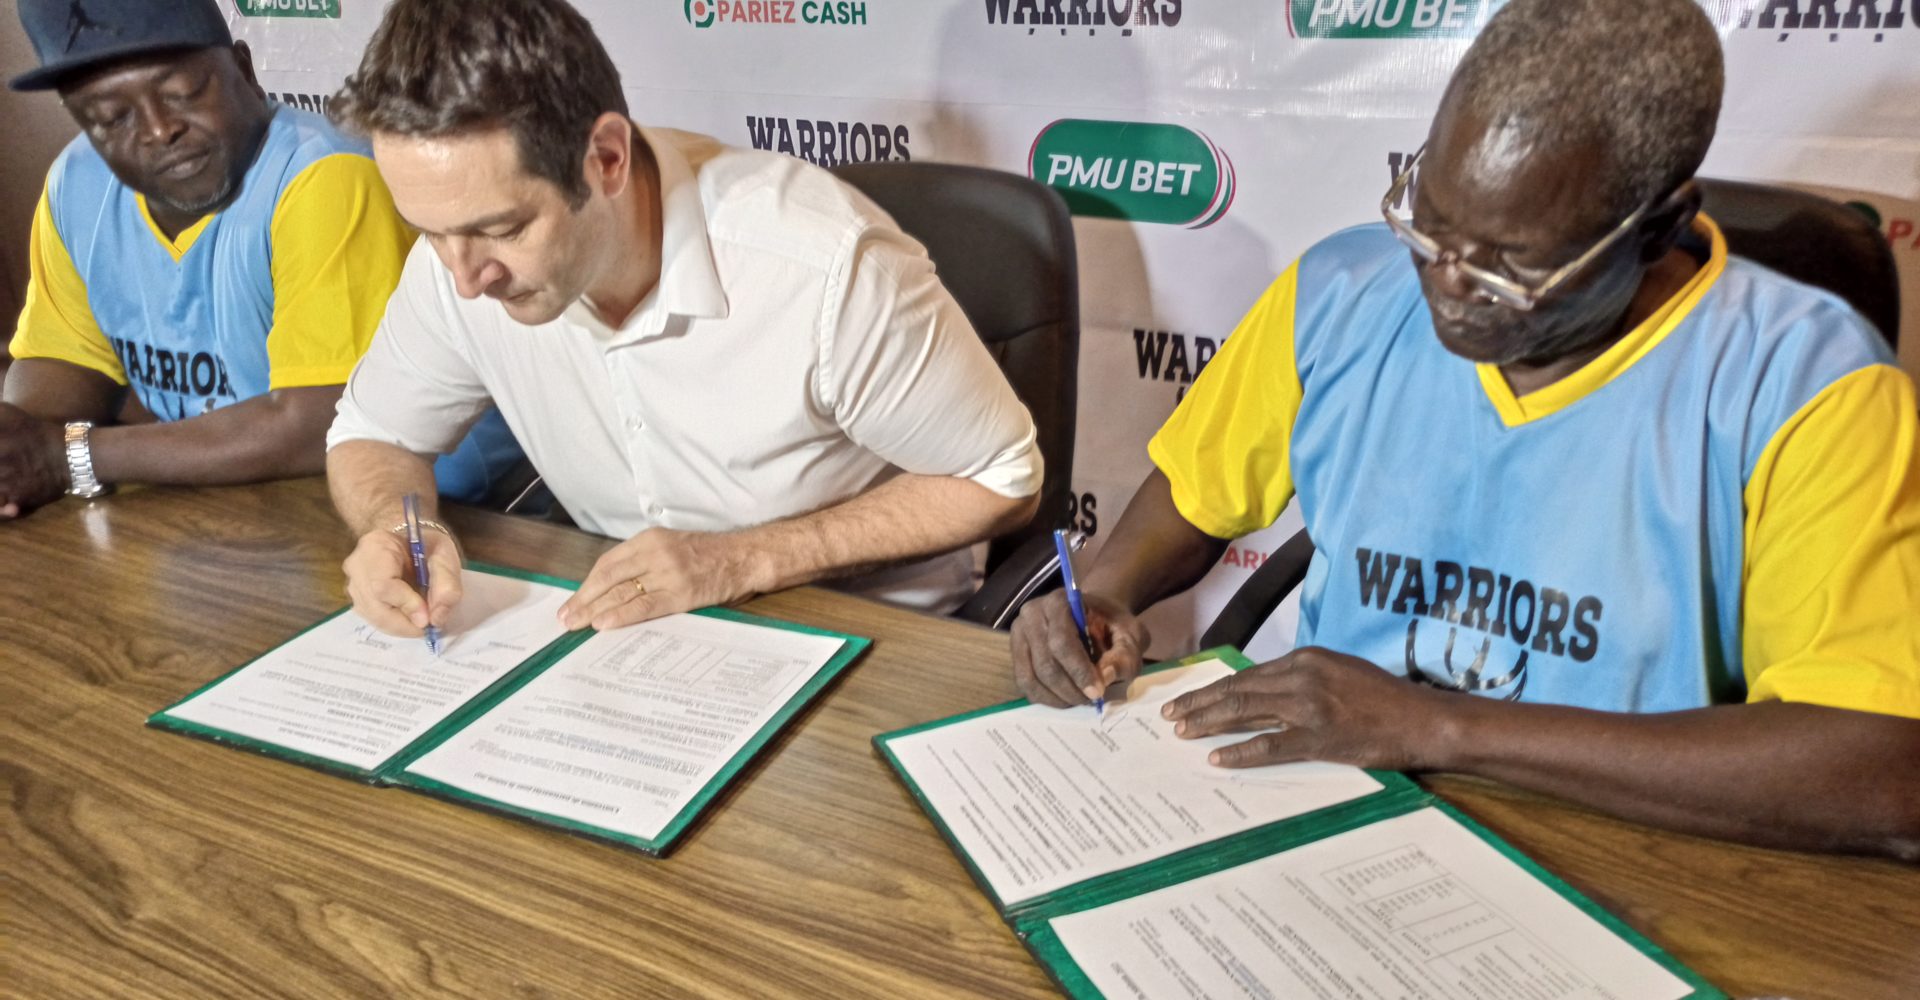 Le Pmu Bet dote l’équipe  de Basket-ball “Warriors” en équipement sportif 1